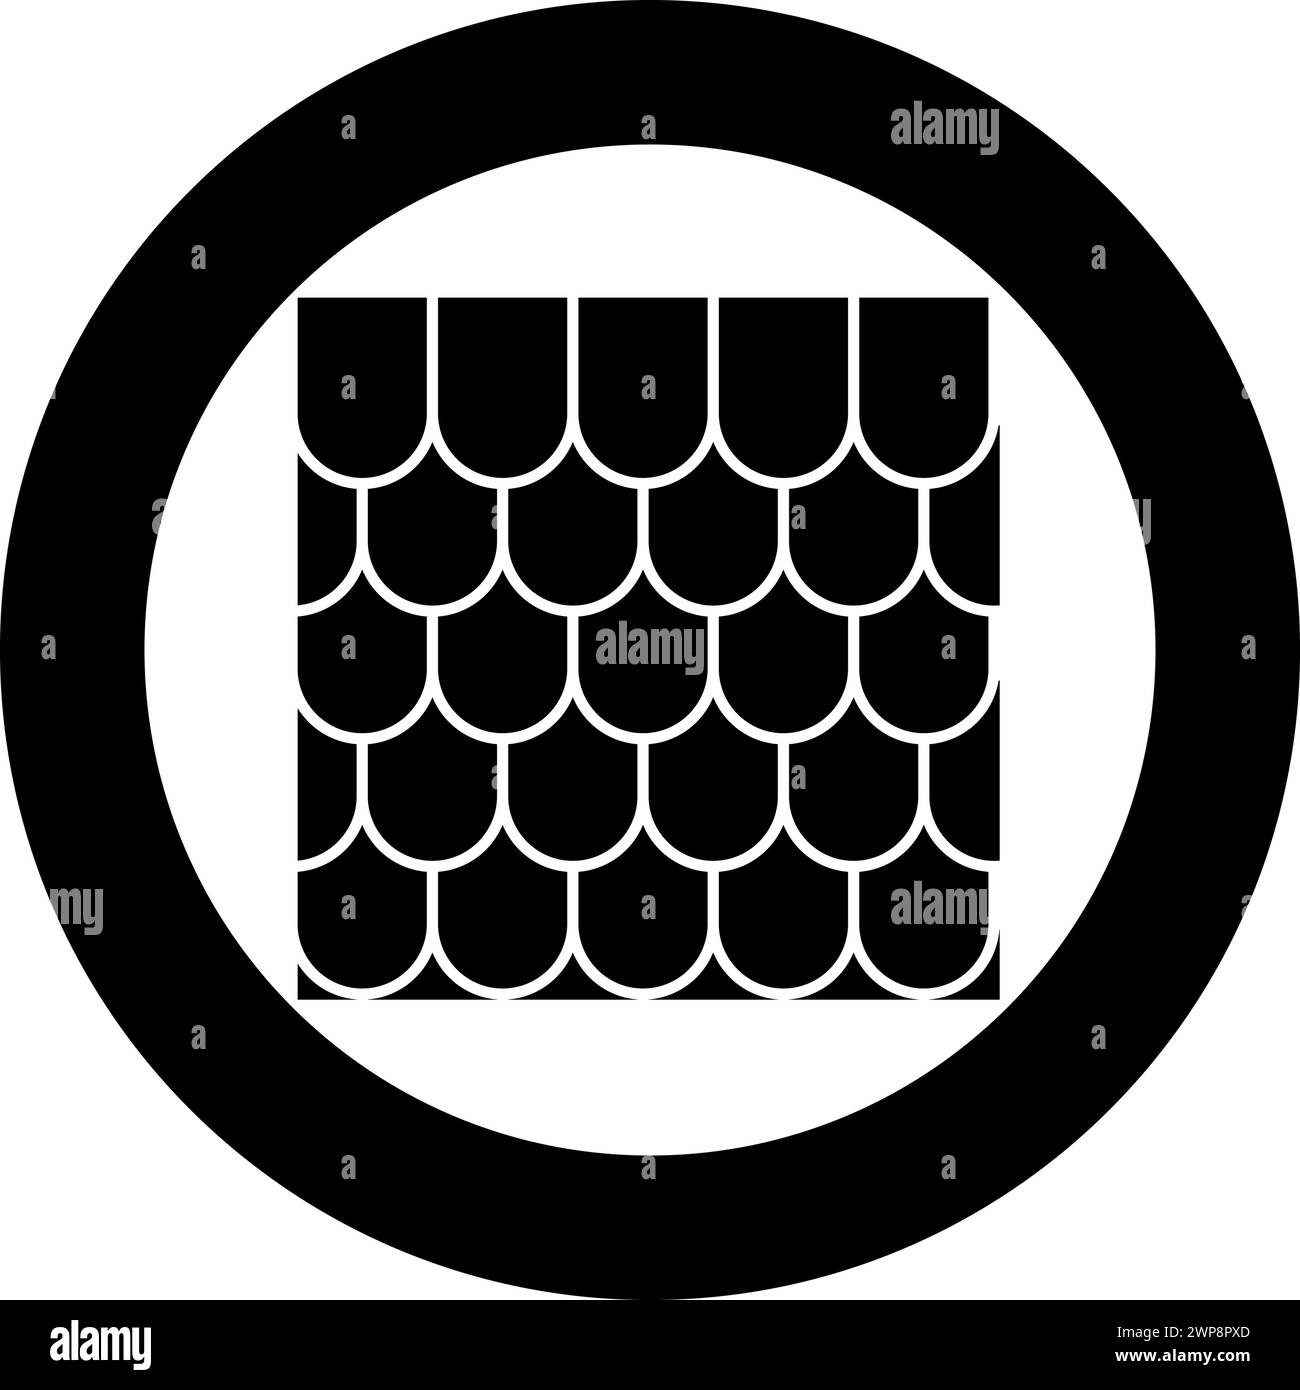 Tuile de toit en céramique ondulée tuile de toit en carton ondulé icône d'ardoise en cercle rond couleur noire illustration vectorielle image solide style simple Illustration de Vecteur